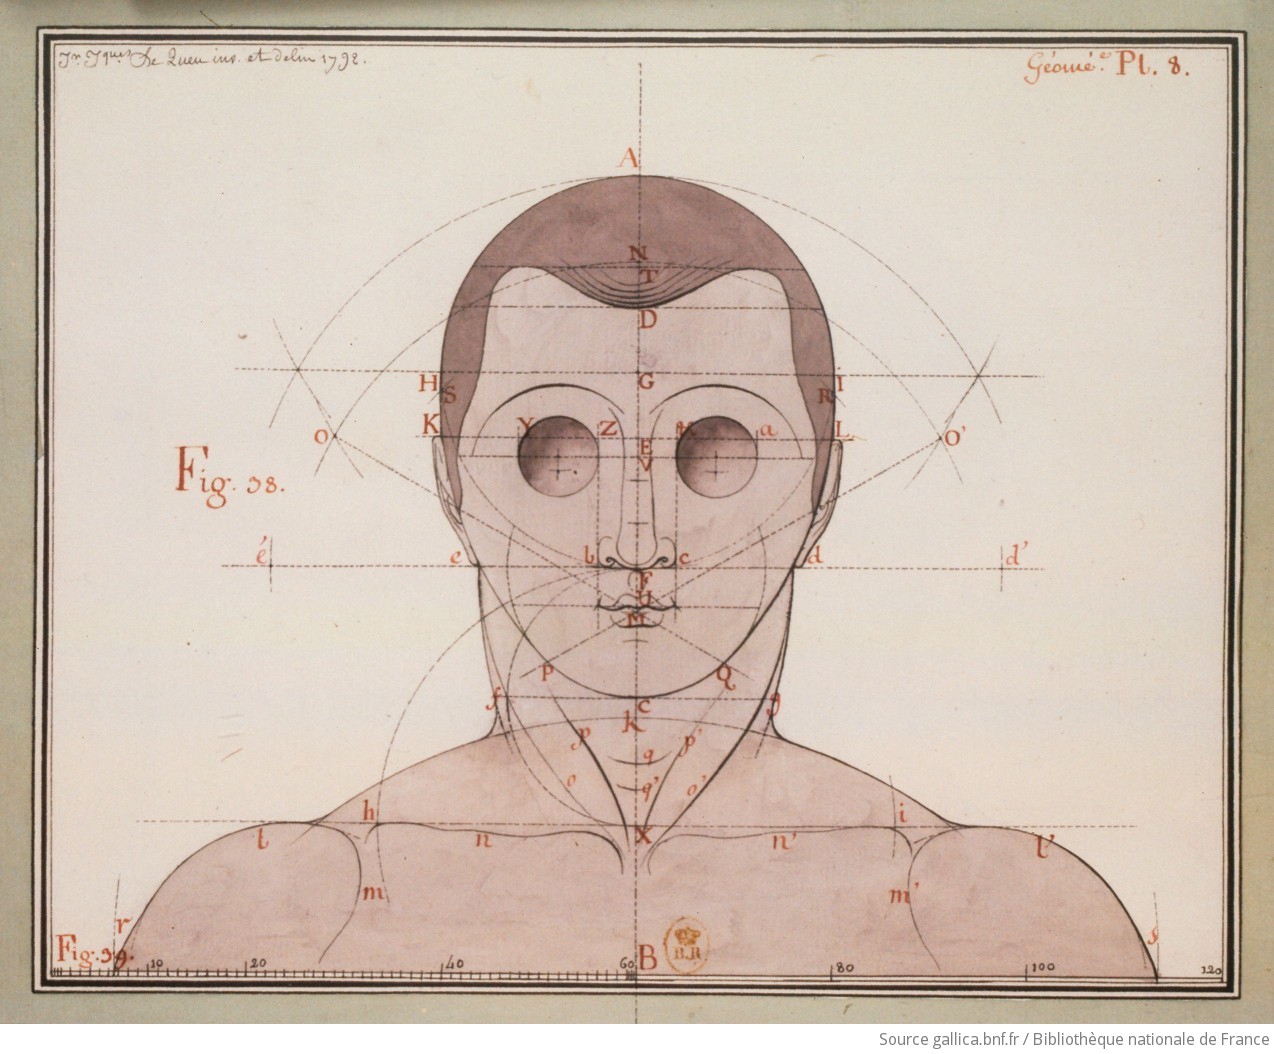 [Etude d'une tête humaine, vue de face] : [dessin] / Jn Jques Le Queu inv. et delin. 1792 - 1